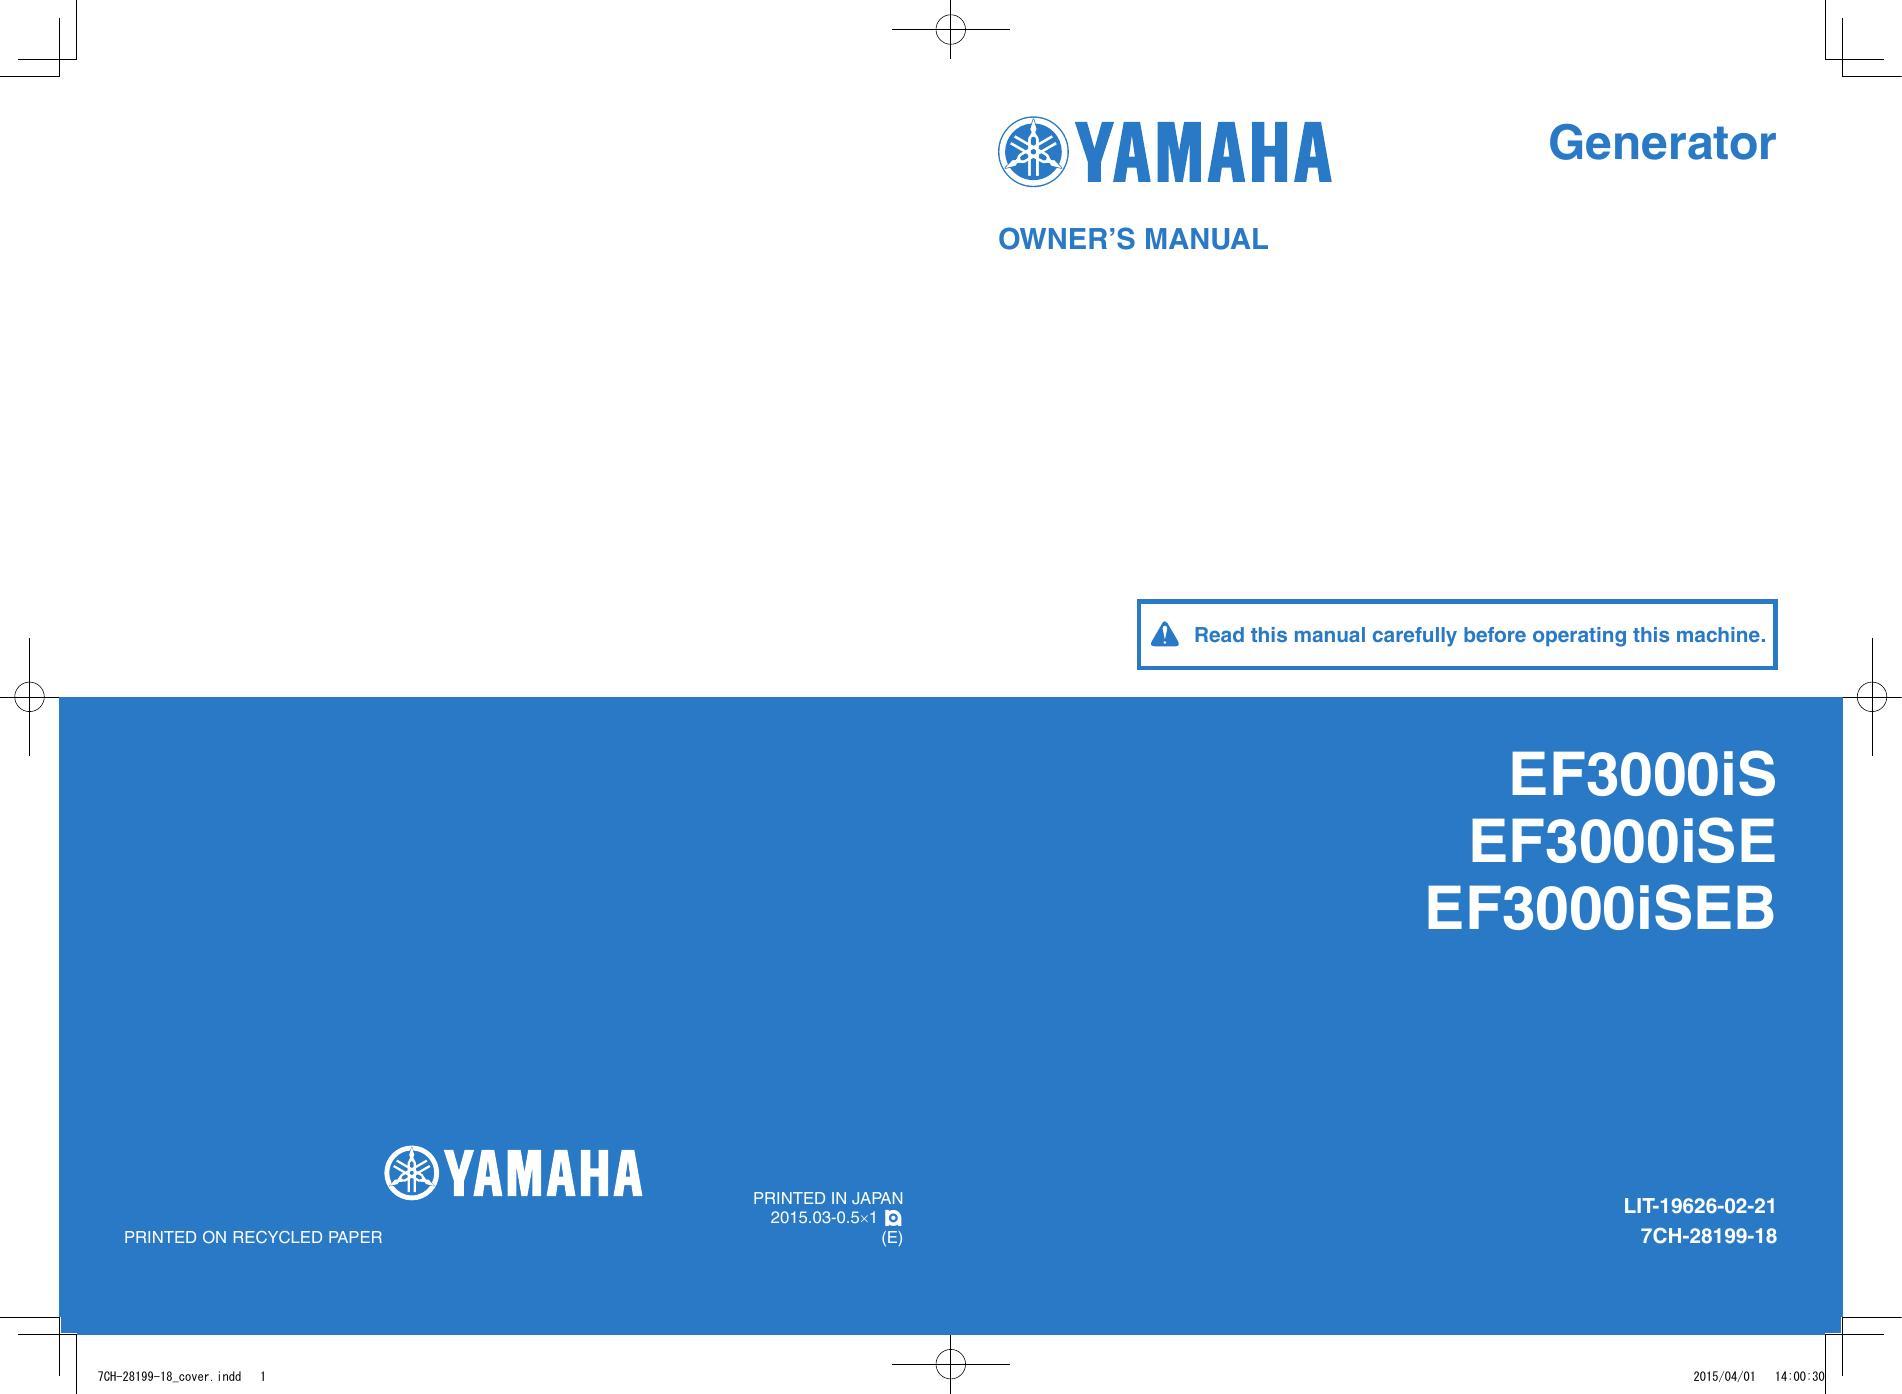 yamaha-owners-manual-generator-ef3ooois-ef3oooise-ef3oooiseb.pdf